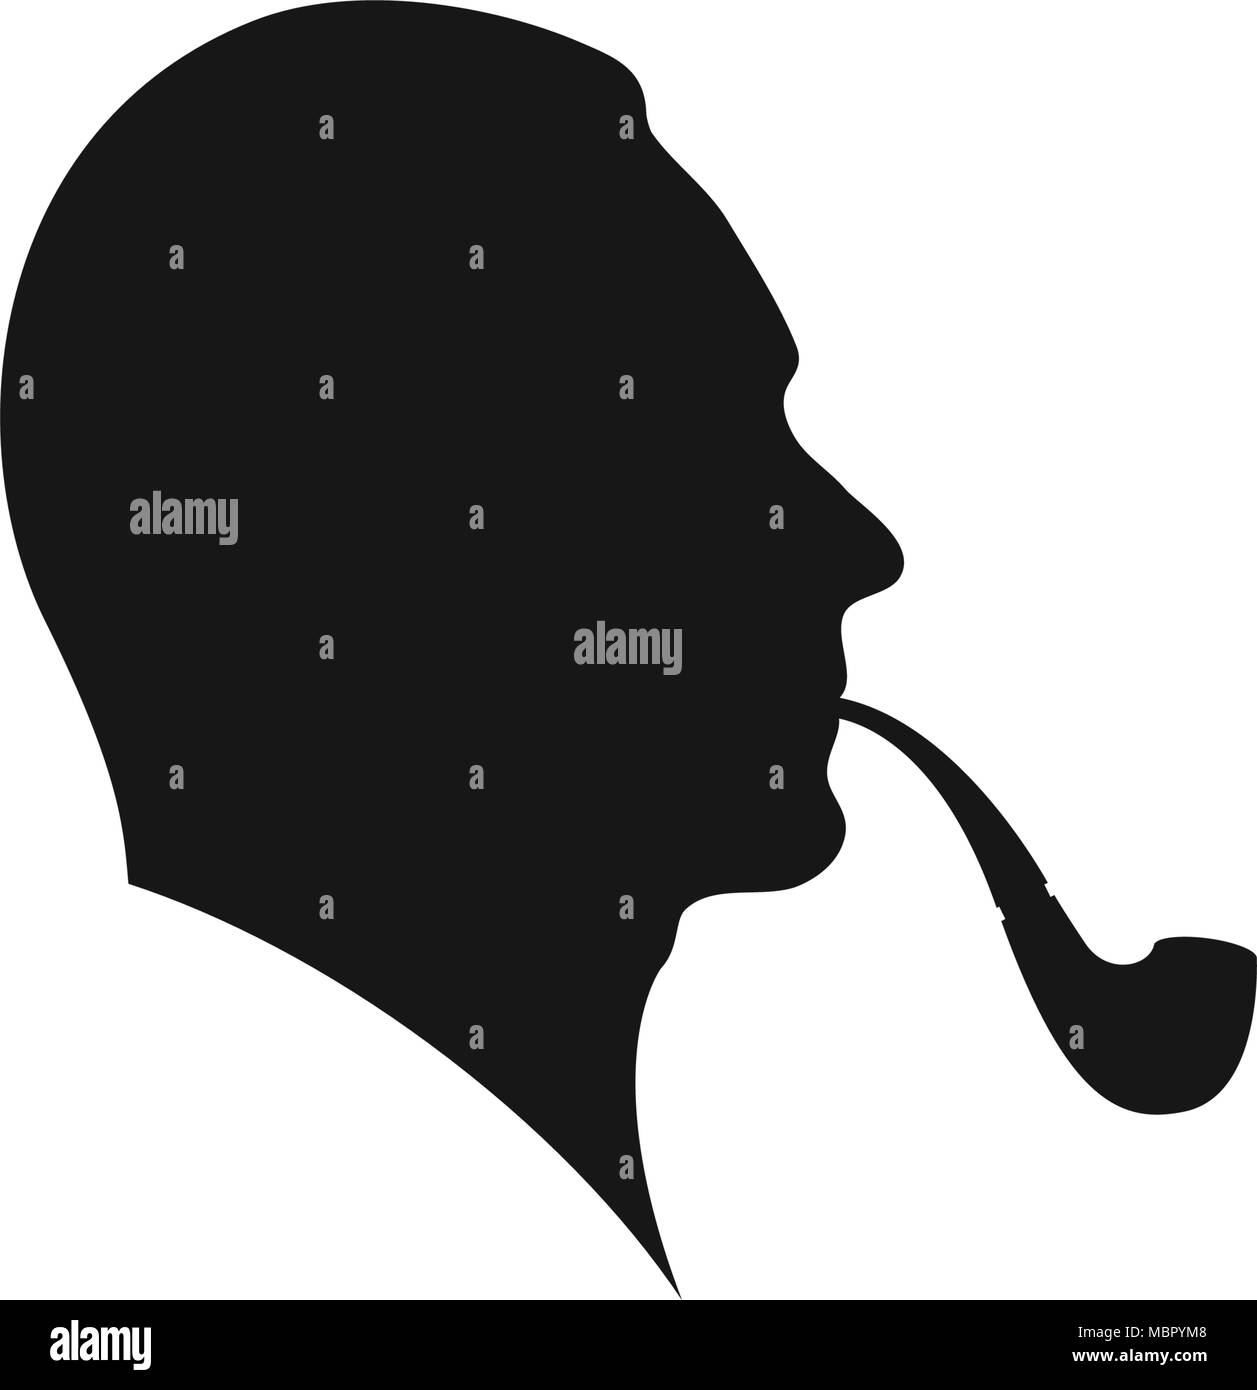 Man Smoking a Pipe. Profile of a Man Smoking A Pipe. Smoking Man Silhouette Stock Vector